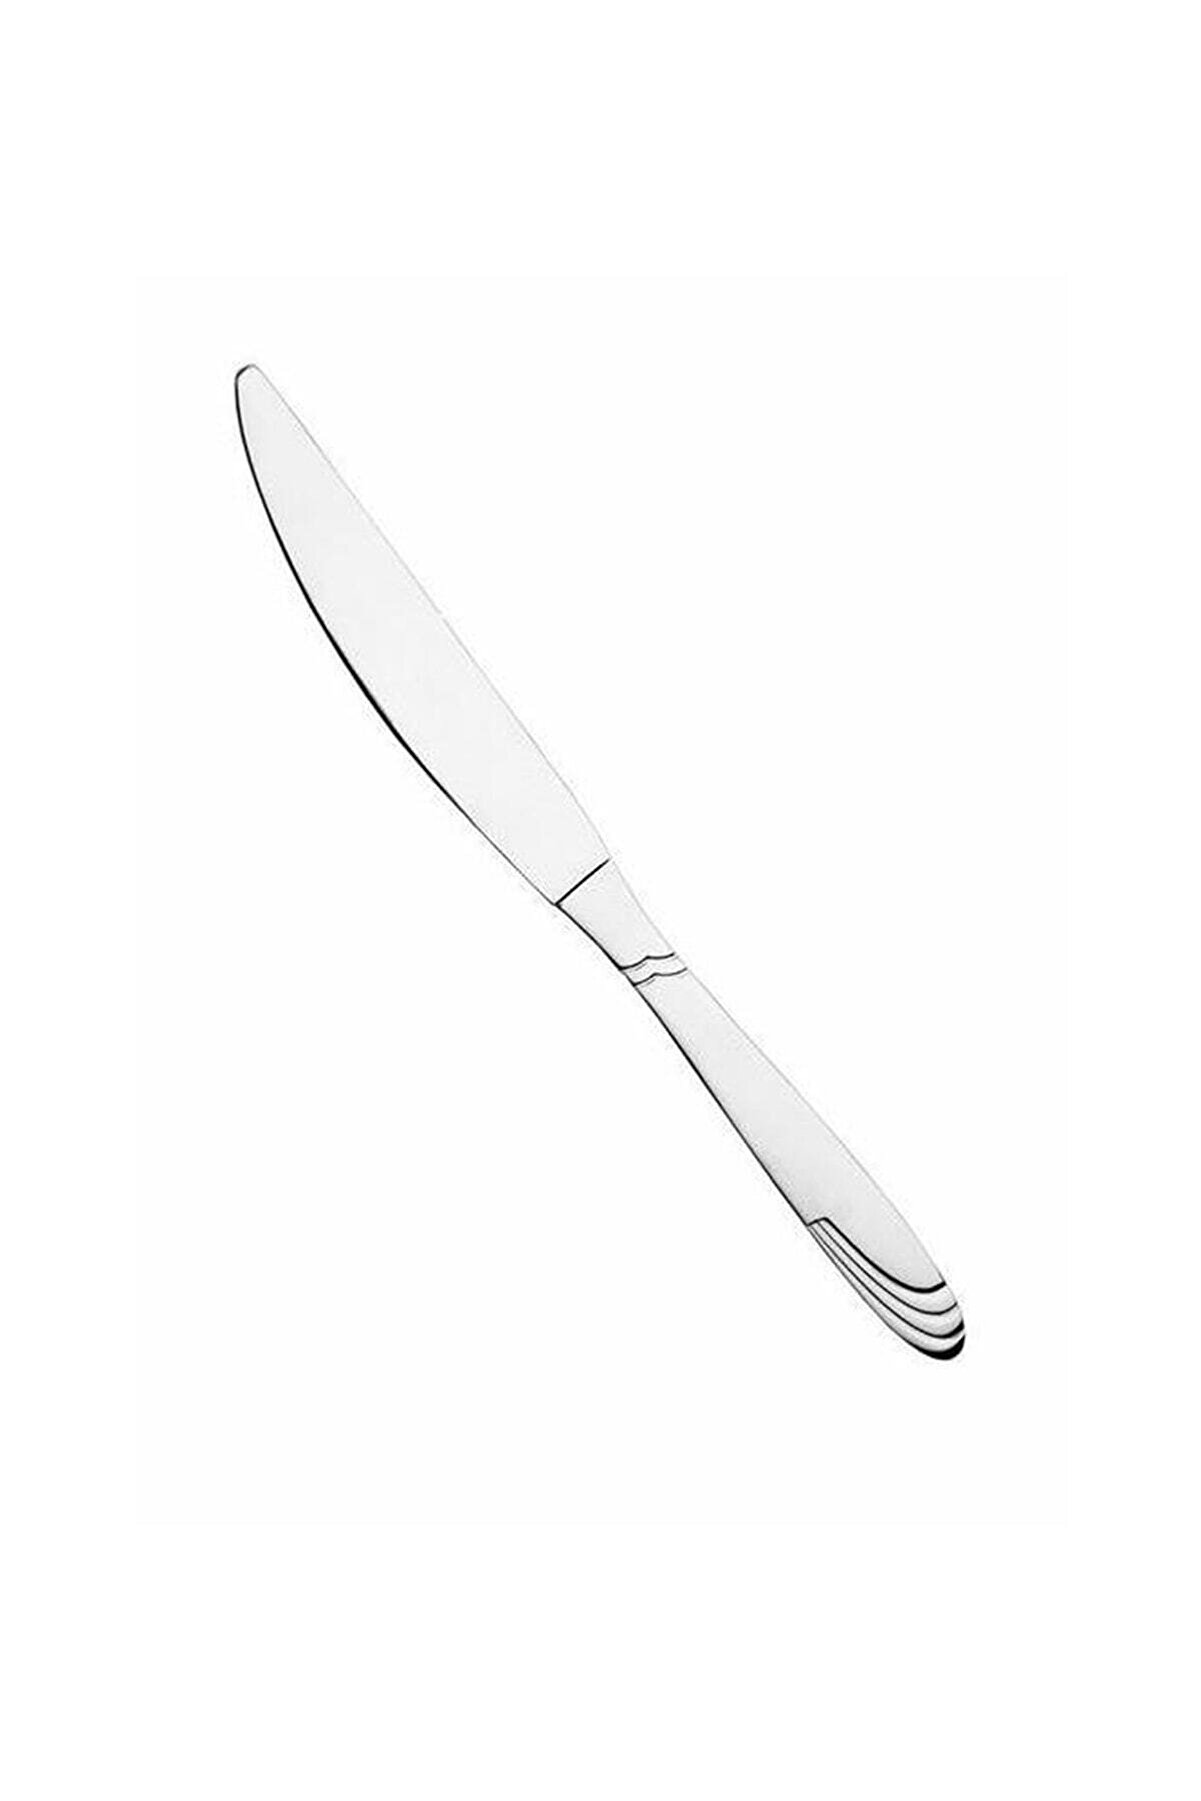 Nehir Lizbon Imran Marka Yemek Bıçak 12 Li Yemek Bıçağı